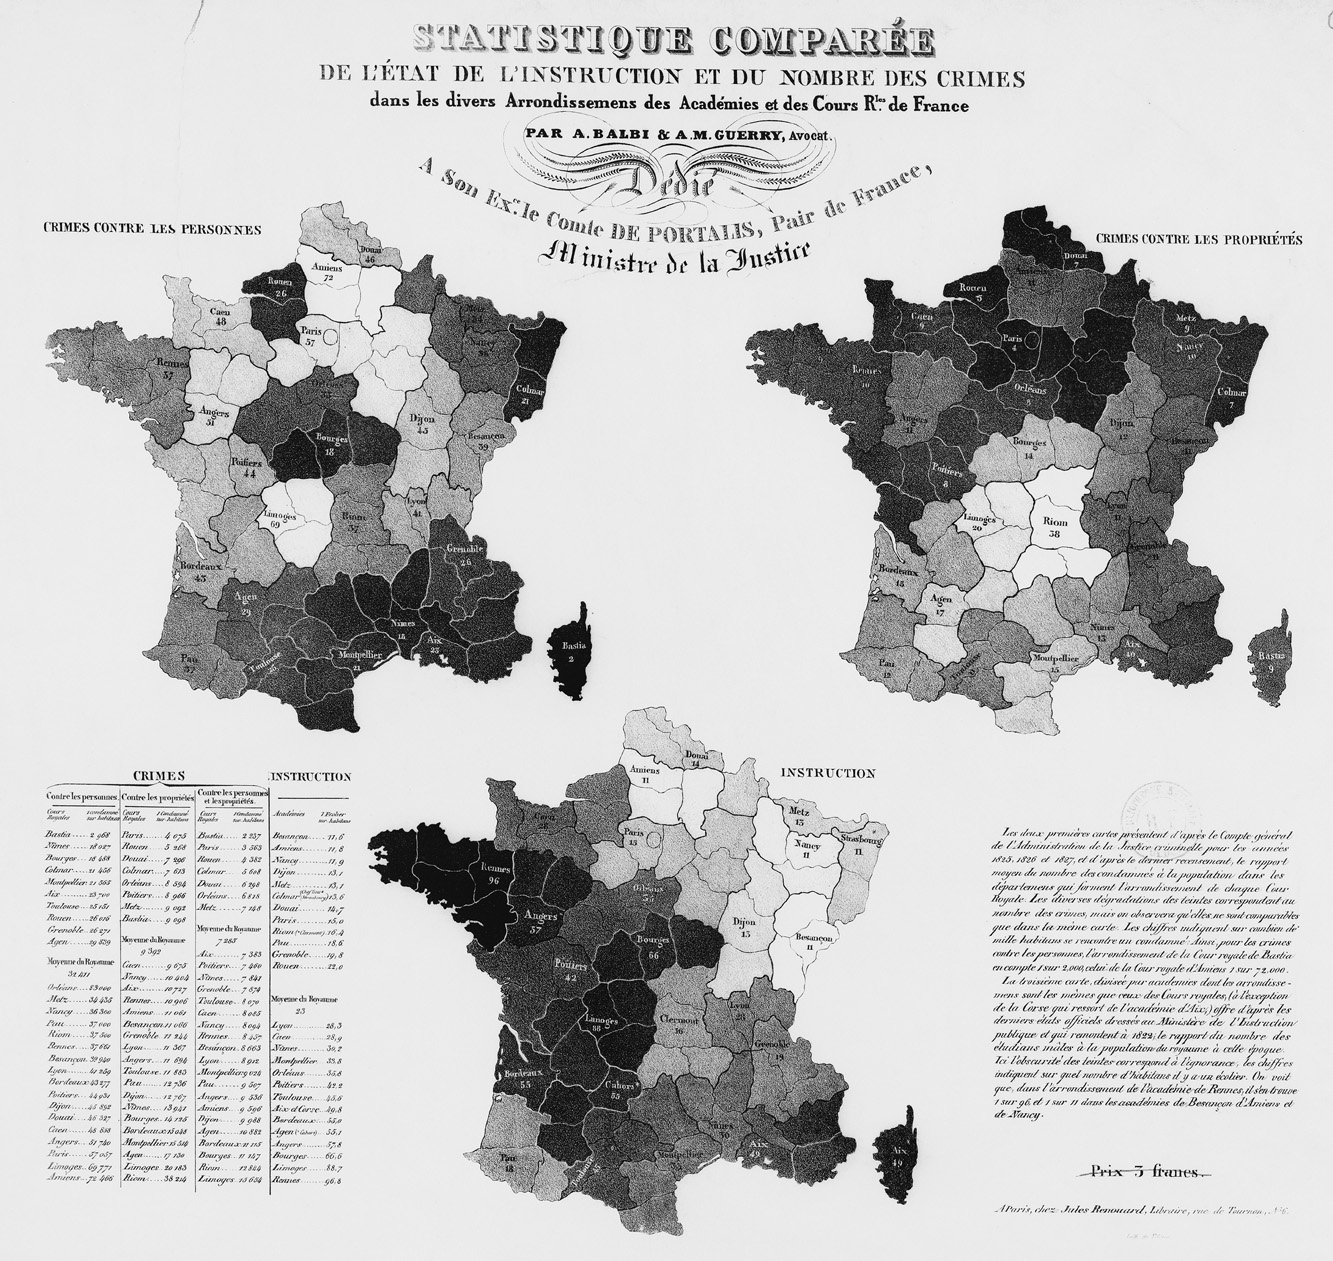 First comparative shaded maps: Guerry and Balbi’s 1829 Statistique comparée de l’état de l’instruction et du nombre des crimes.